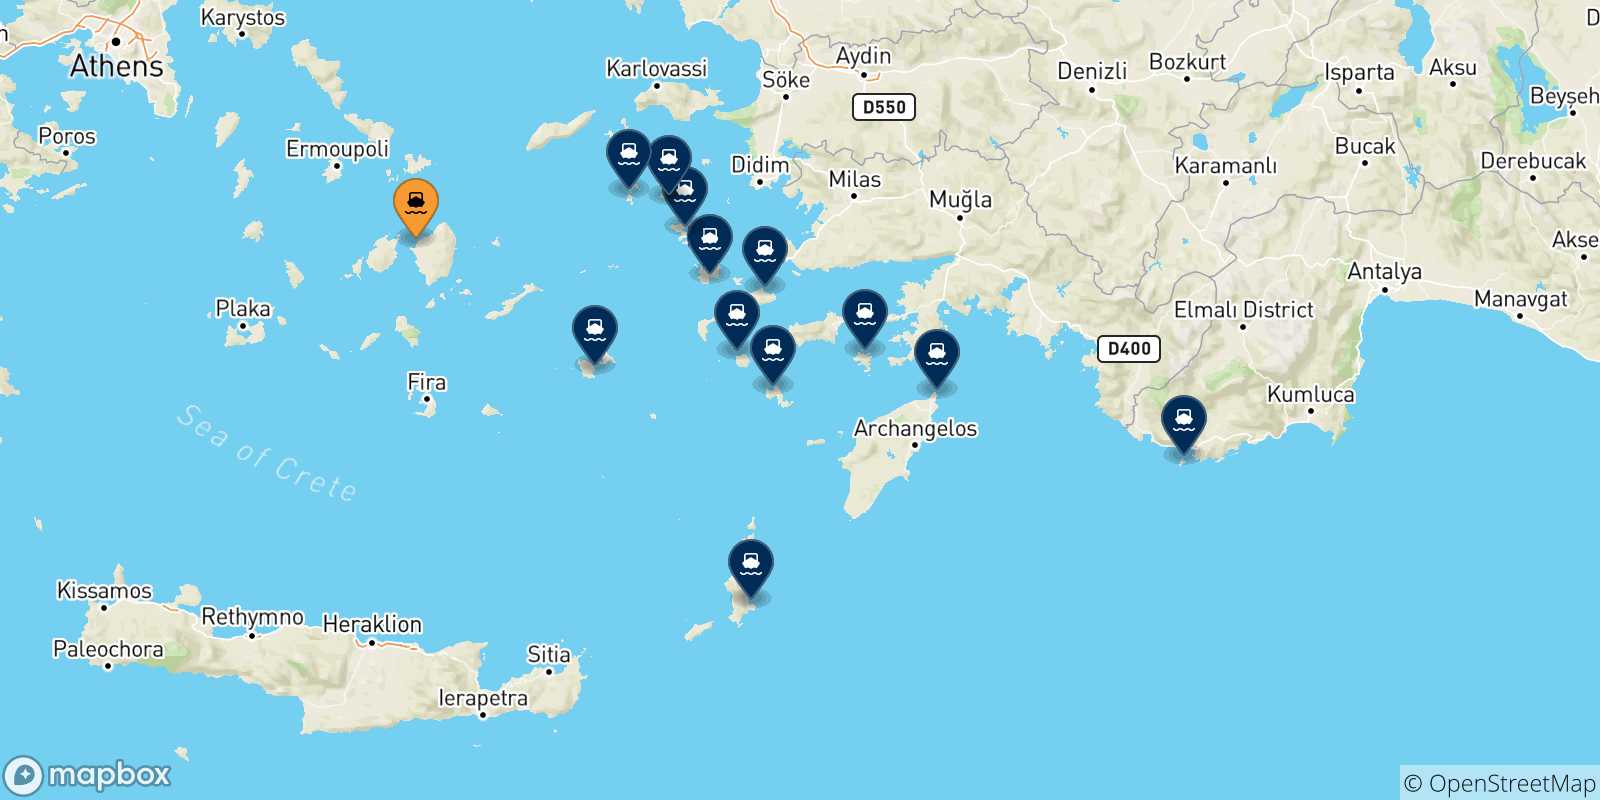 Mappa delle possibili rotte tra Naxos e le Isole Dodecaneso